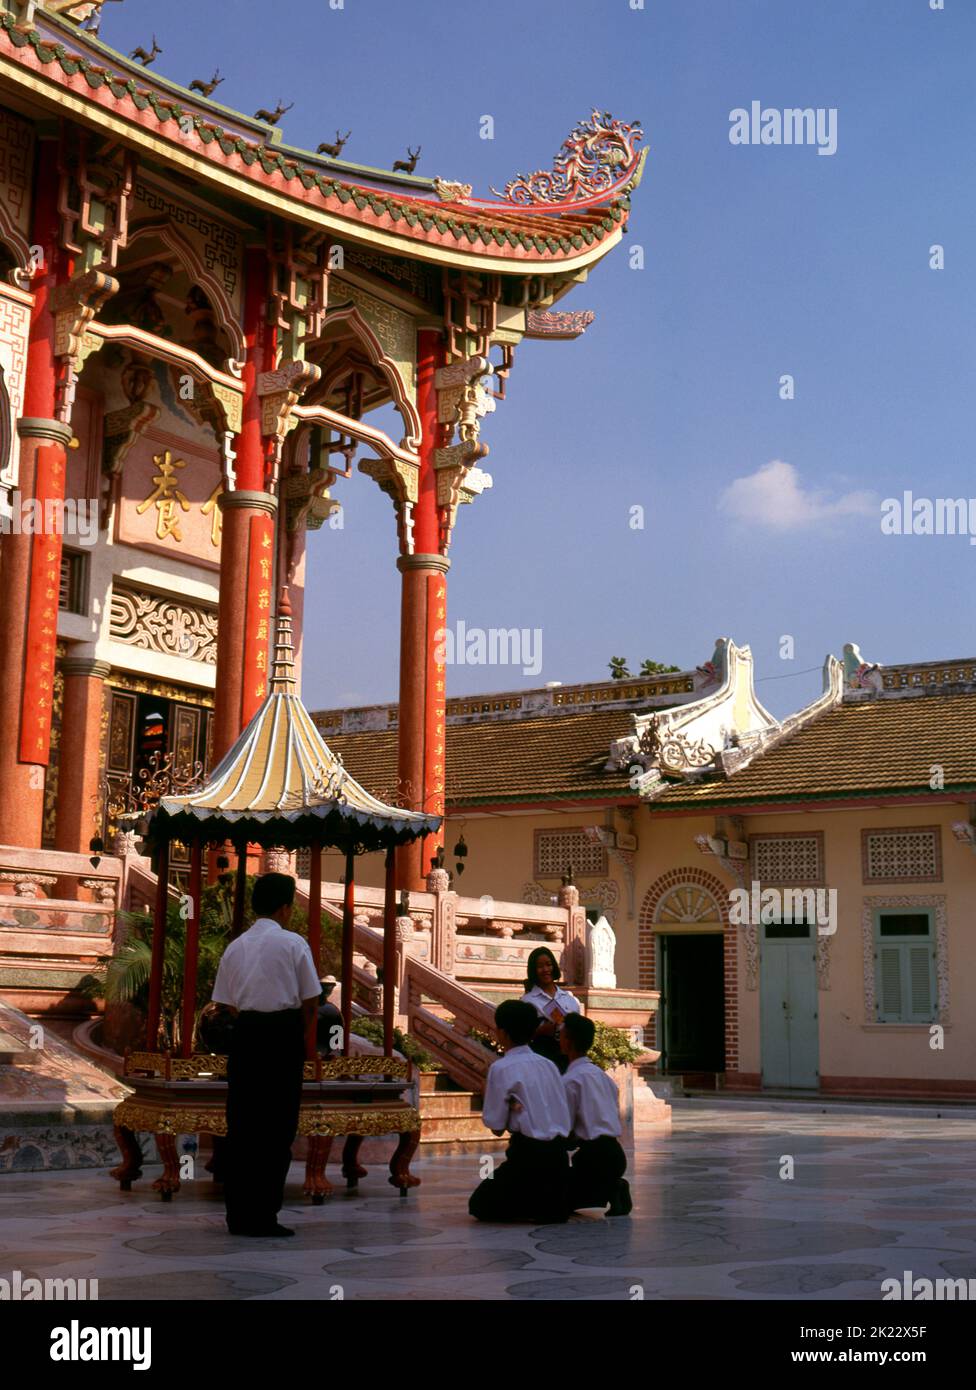 Thailand: Der Hauptviharn (Versammlungshalle), Wat Pho Maen Khunaram, Bangkok. Wat Pho Maen Khunaram ist ein buddhistischer Tempel im Mahayana, der 1959 erbaut wurde. Es vereint thailändische, chinesische und tibetische Architekturstile. Stockfoto